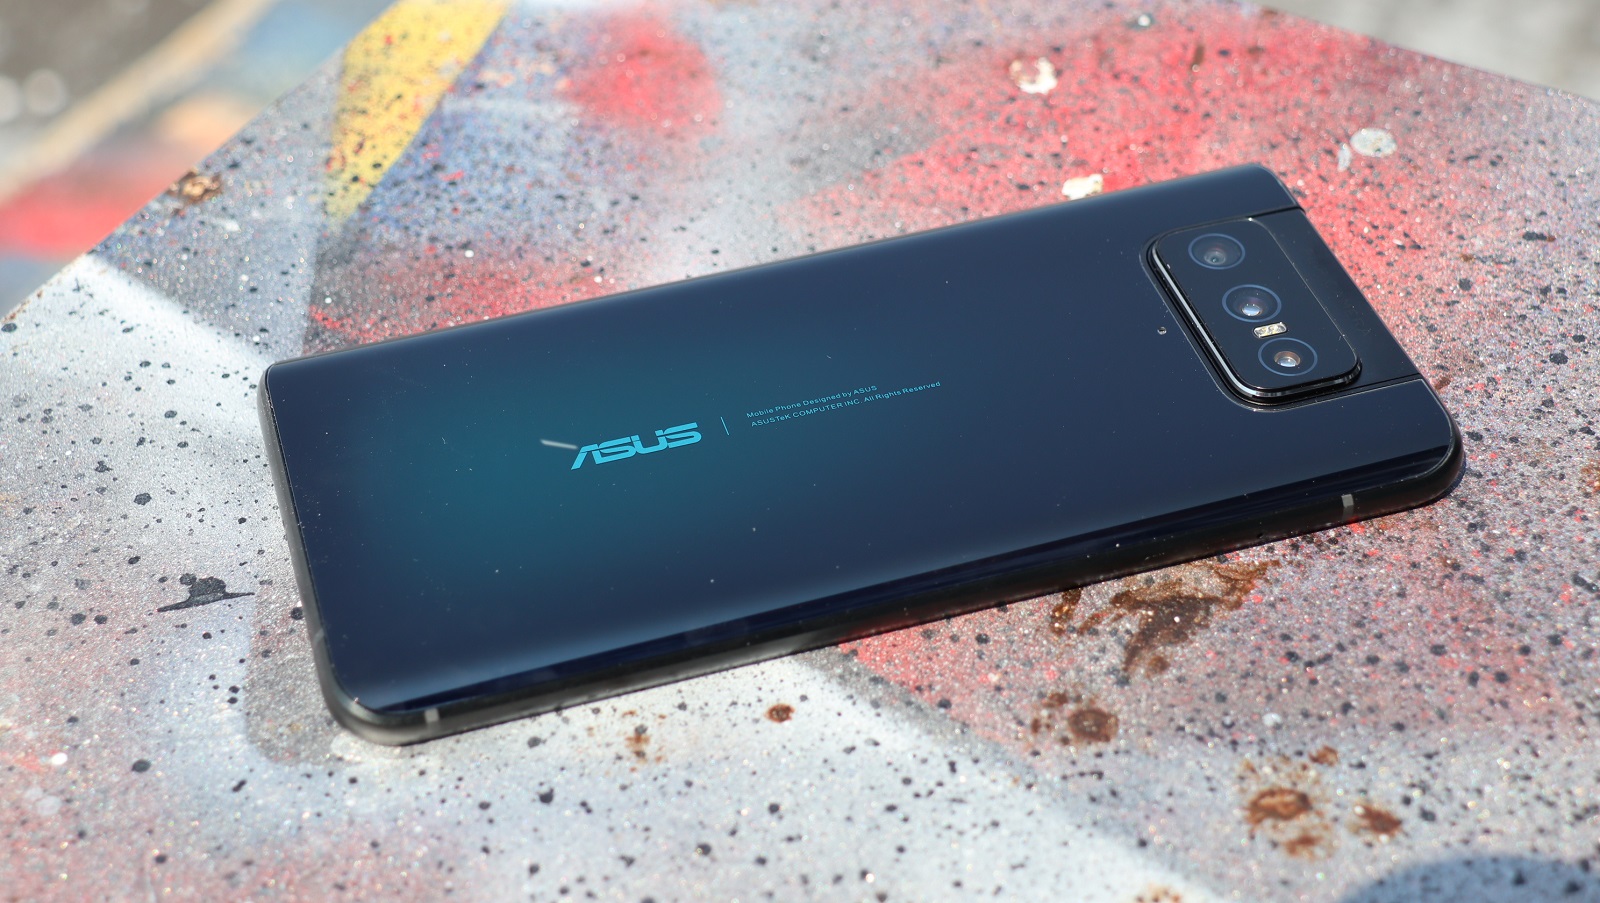 Asus ZenFone 7 Pro